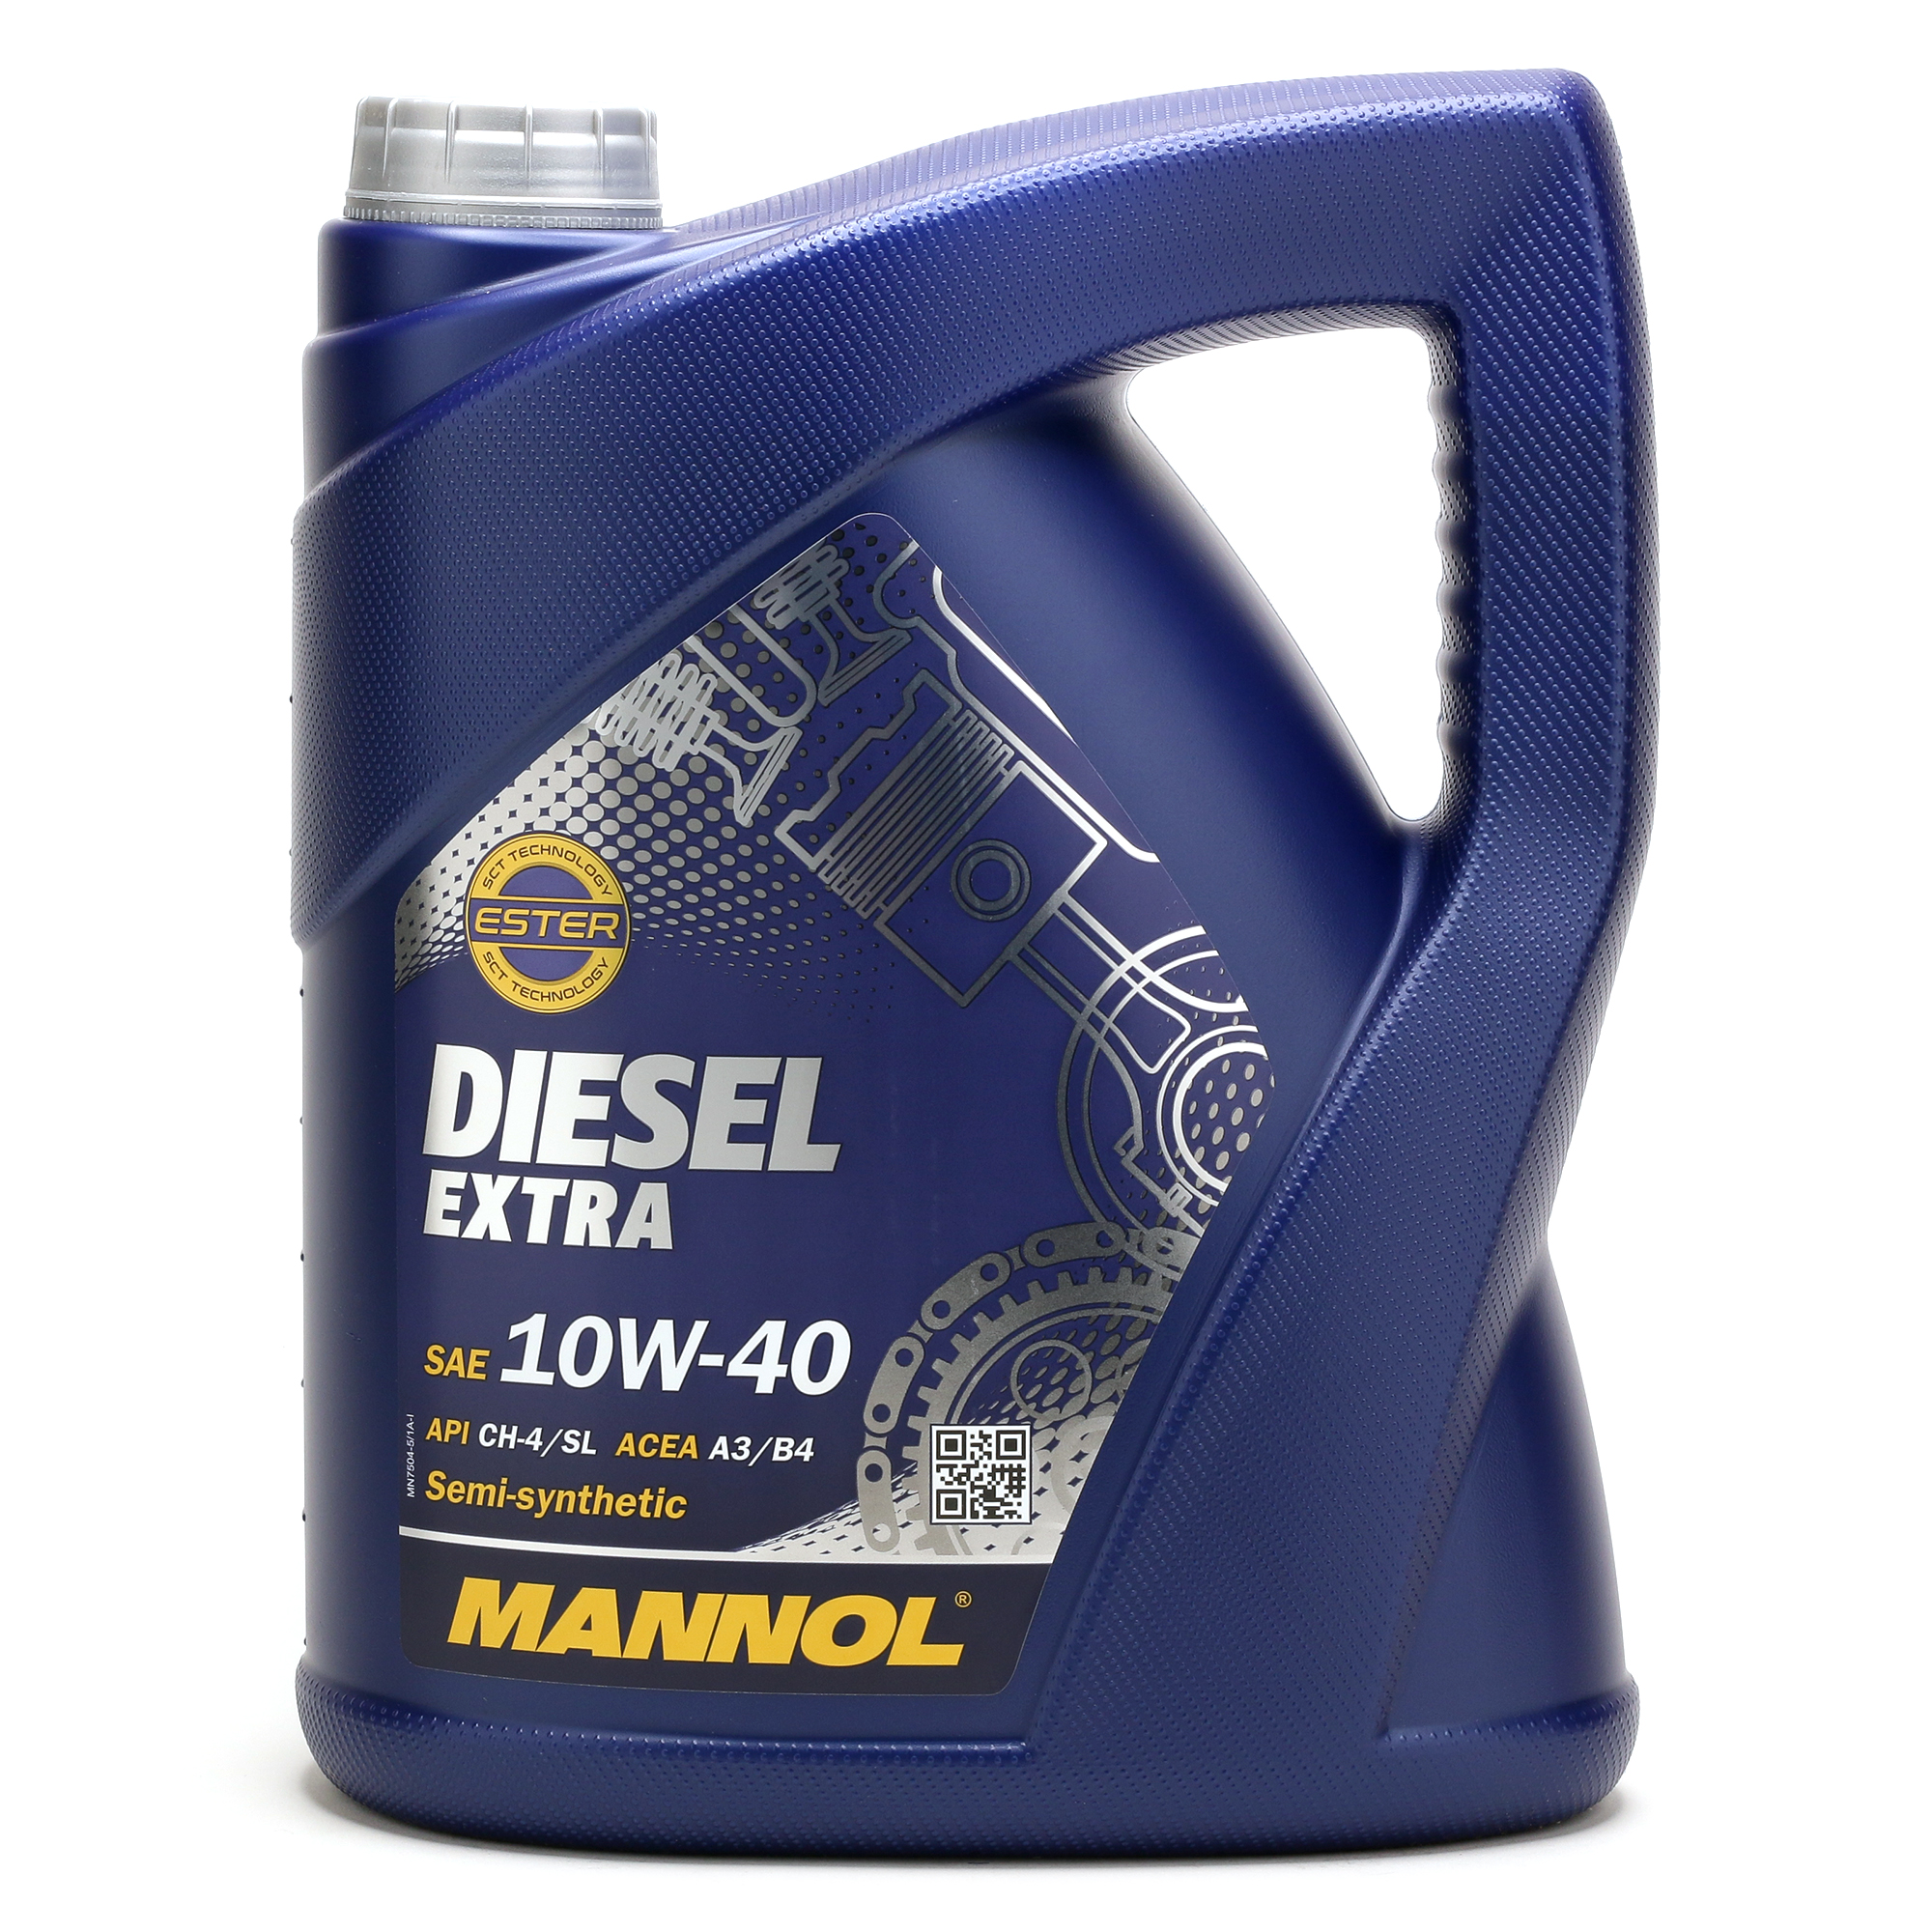 MANNOL Diesel Extra 10W-40 Motoröl 5Liter - SAE 10W-40 - PKW Motoröle -  Mannol - Öl Marken - Öle 